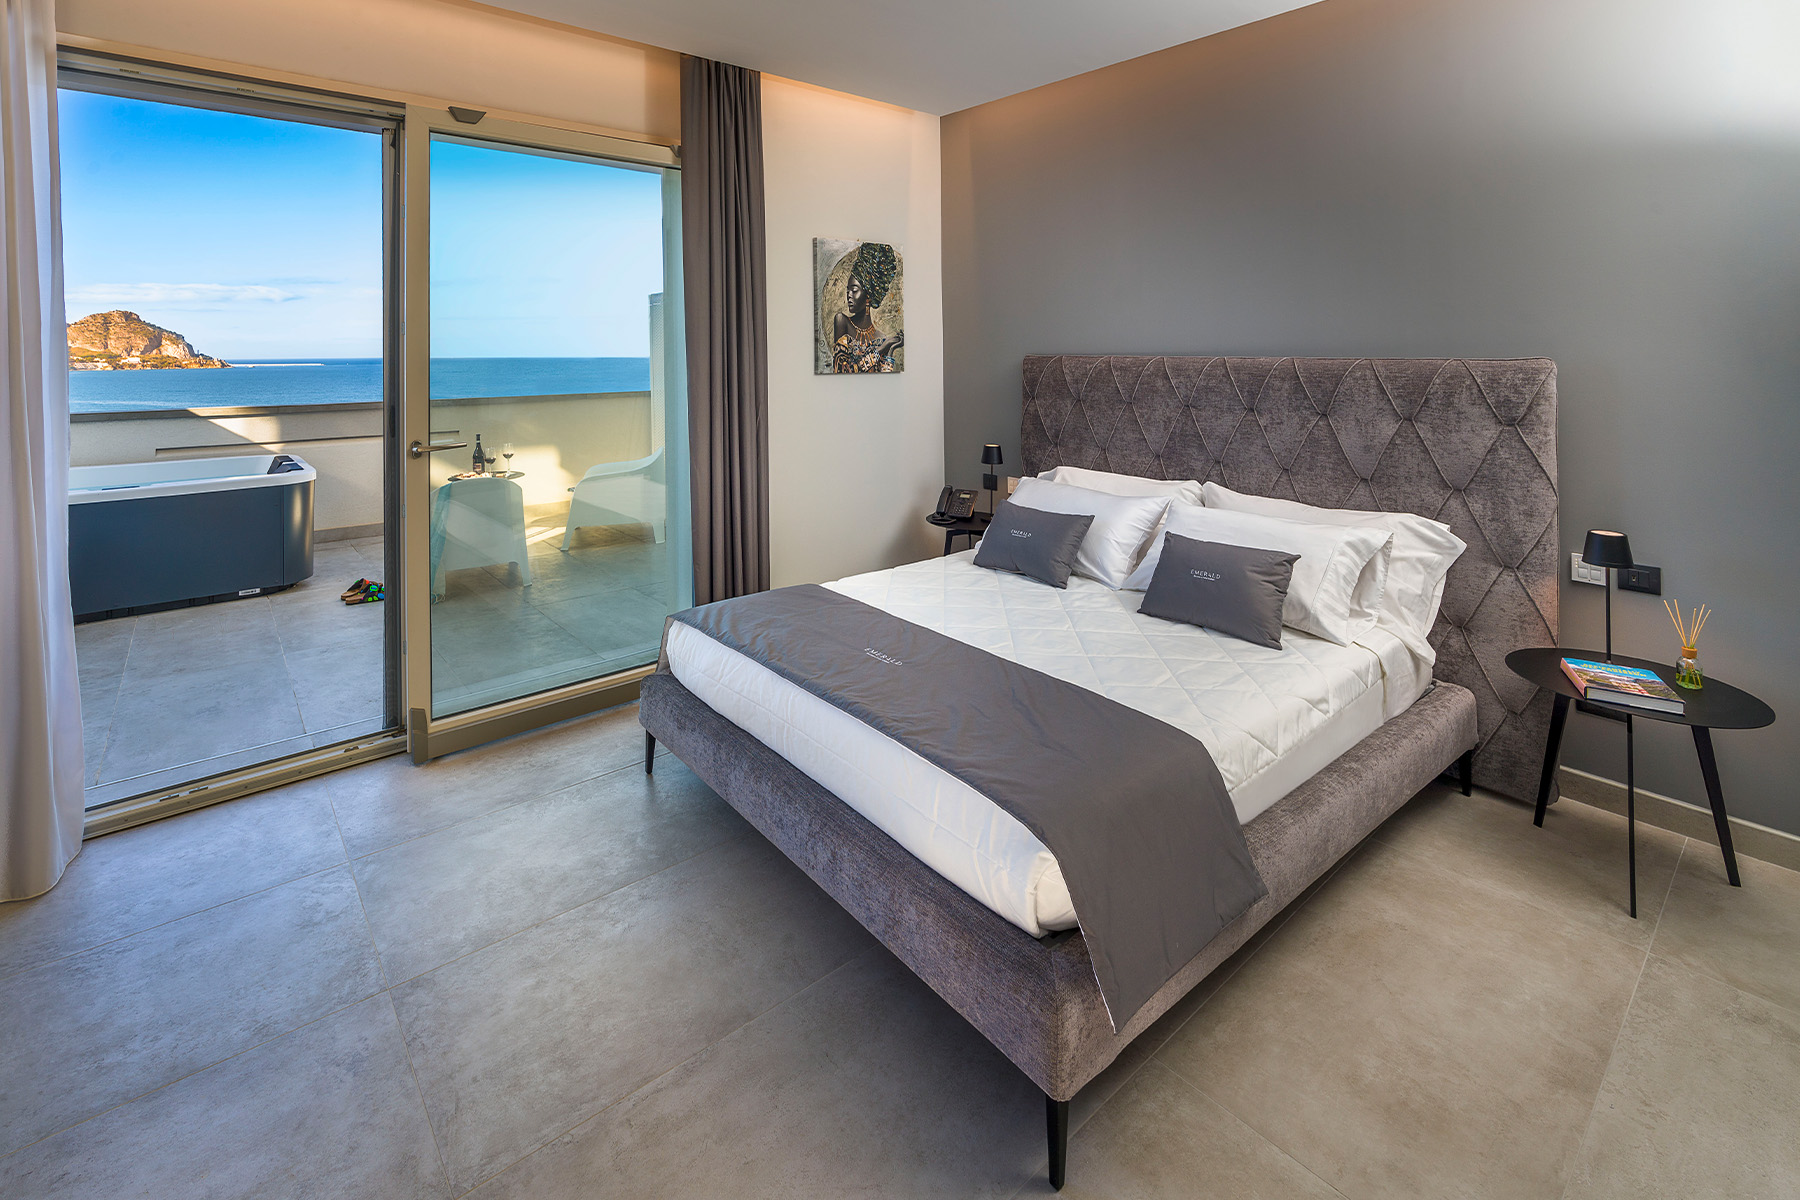 Deluxe con terrazza e mini piscina privata vista mare - Emerald - Residence Hotel Cefalù sul mare